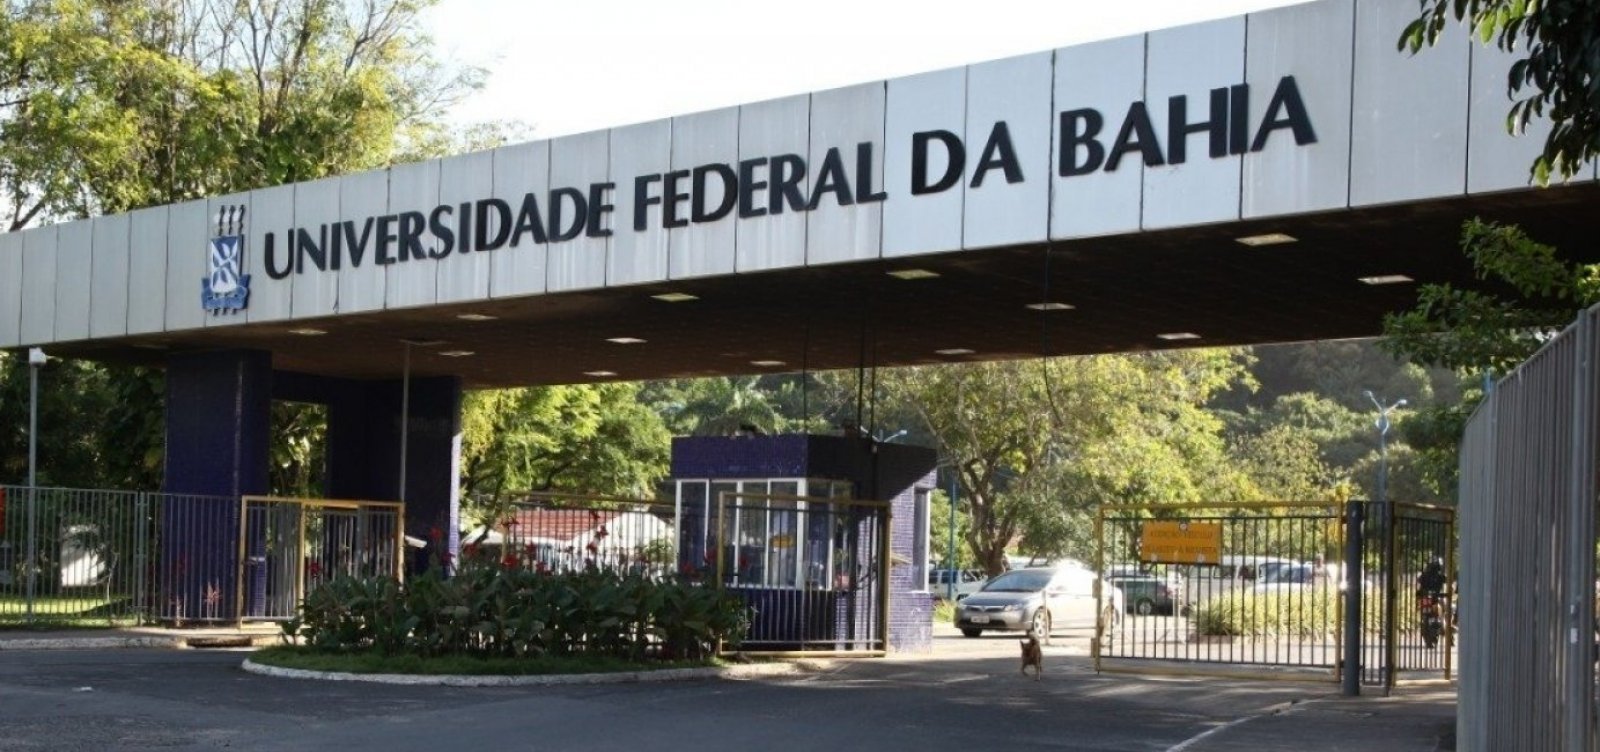 Citando "escalada de violência" em Salvador, Ufba recomenda flexibilização das aulas 